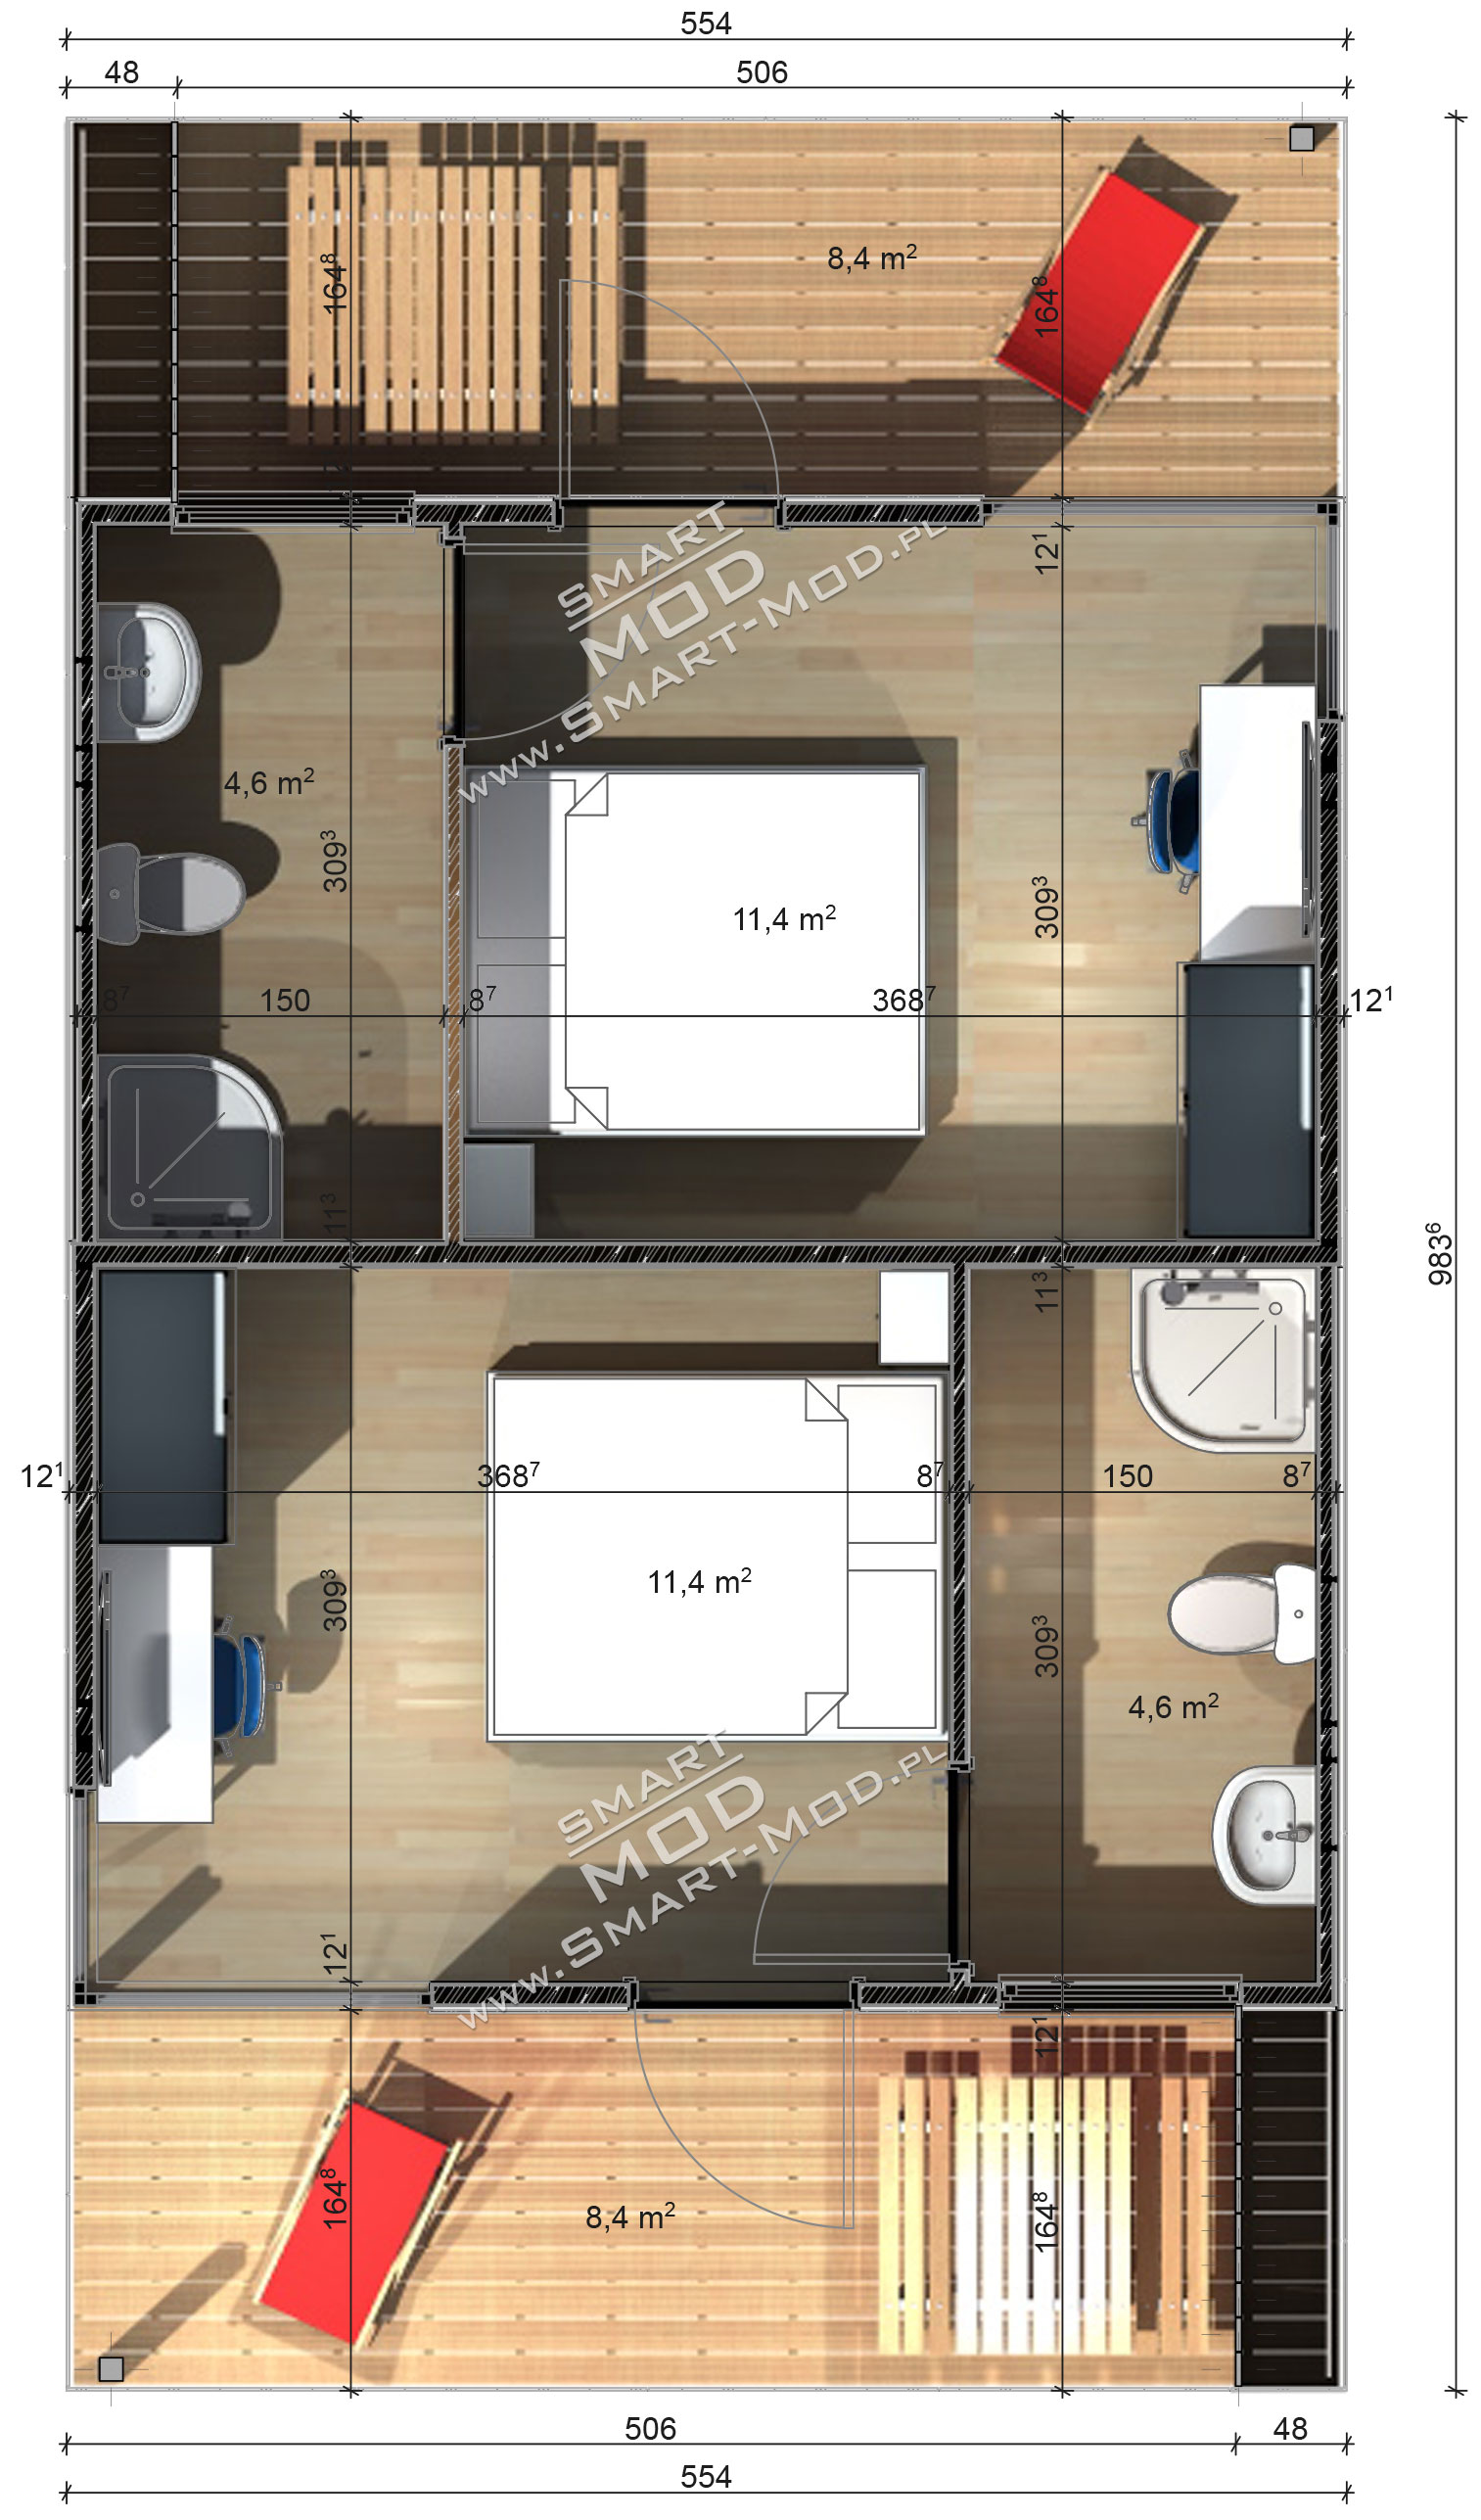 SmartMod - Domki kempingowe strona 10 Rzut Zestawienie pomieszczeń: 1. Dwie sypialnie po 11,4m² 2.